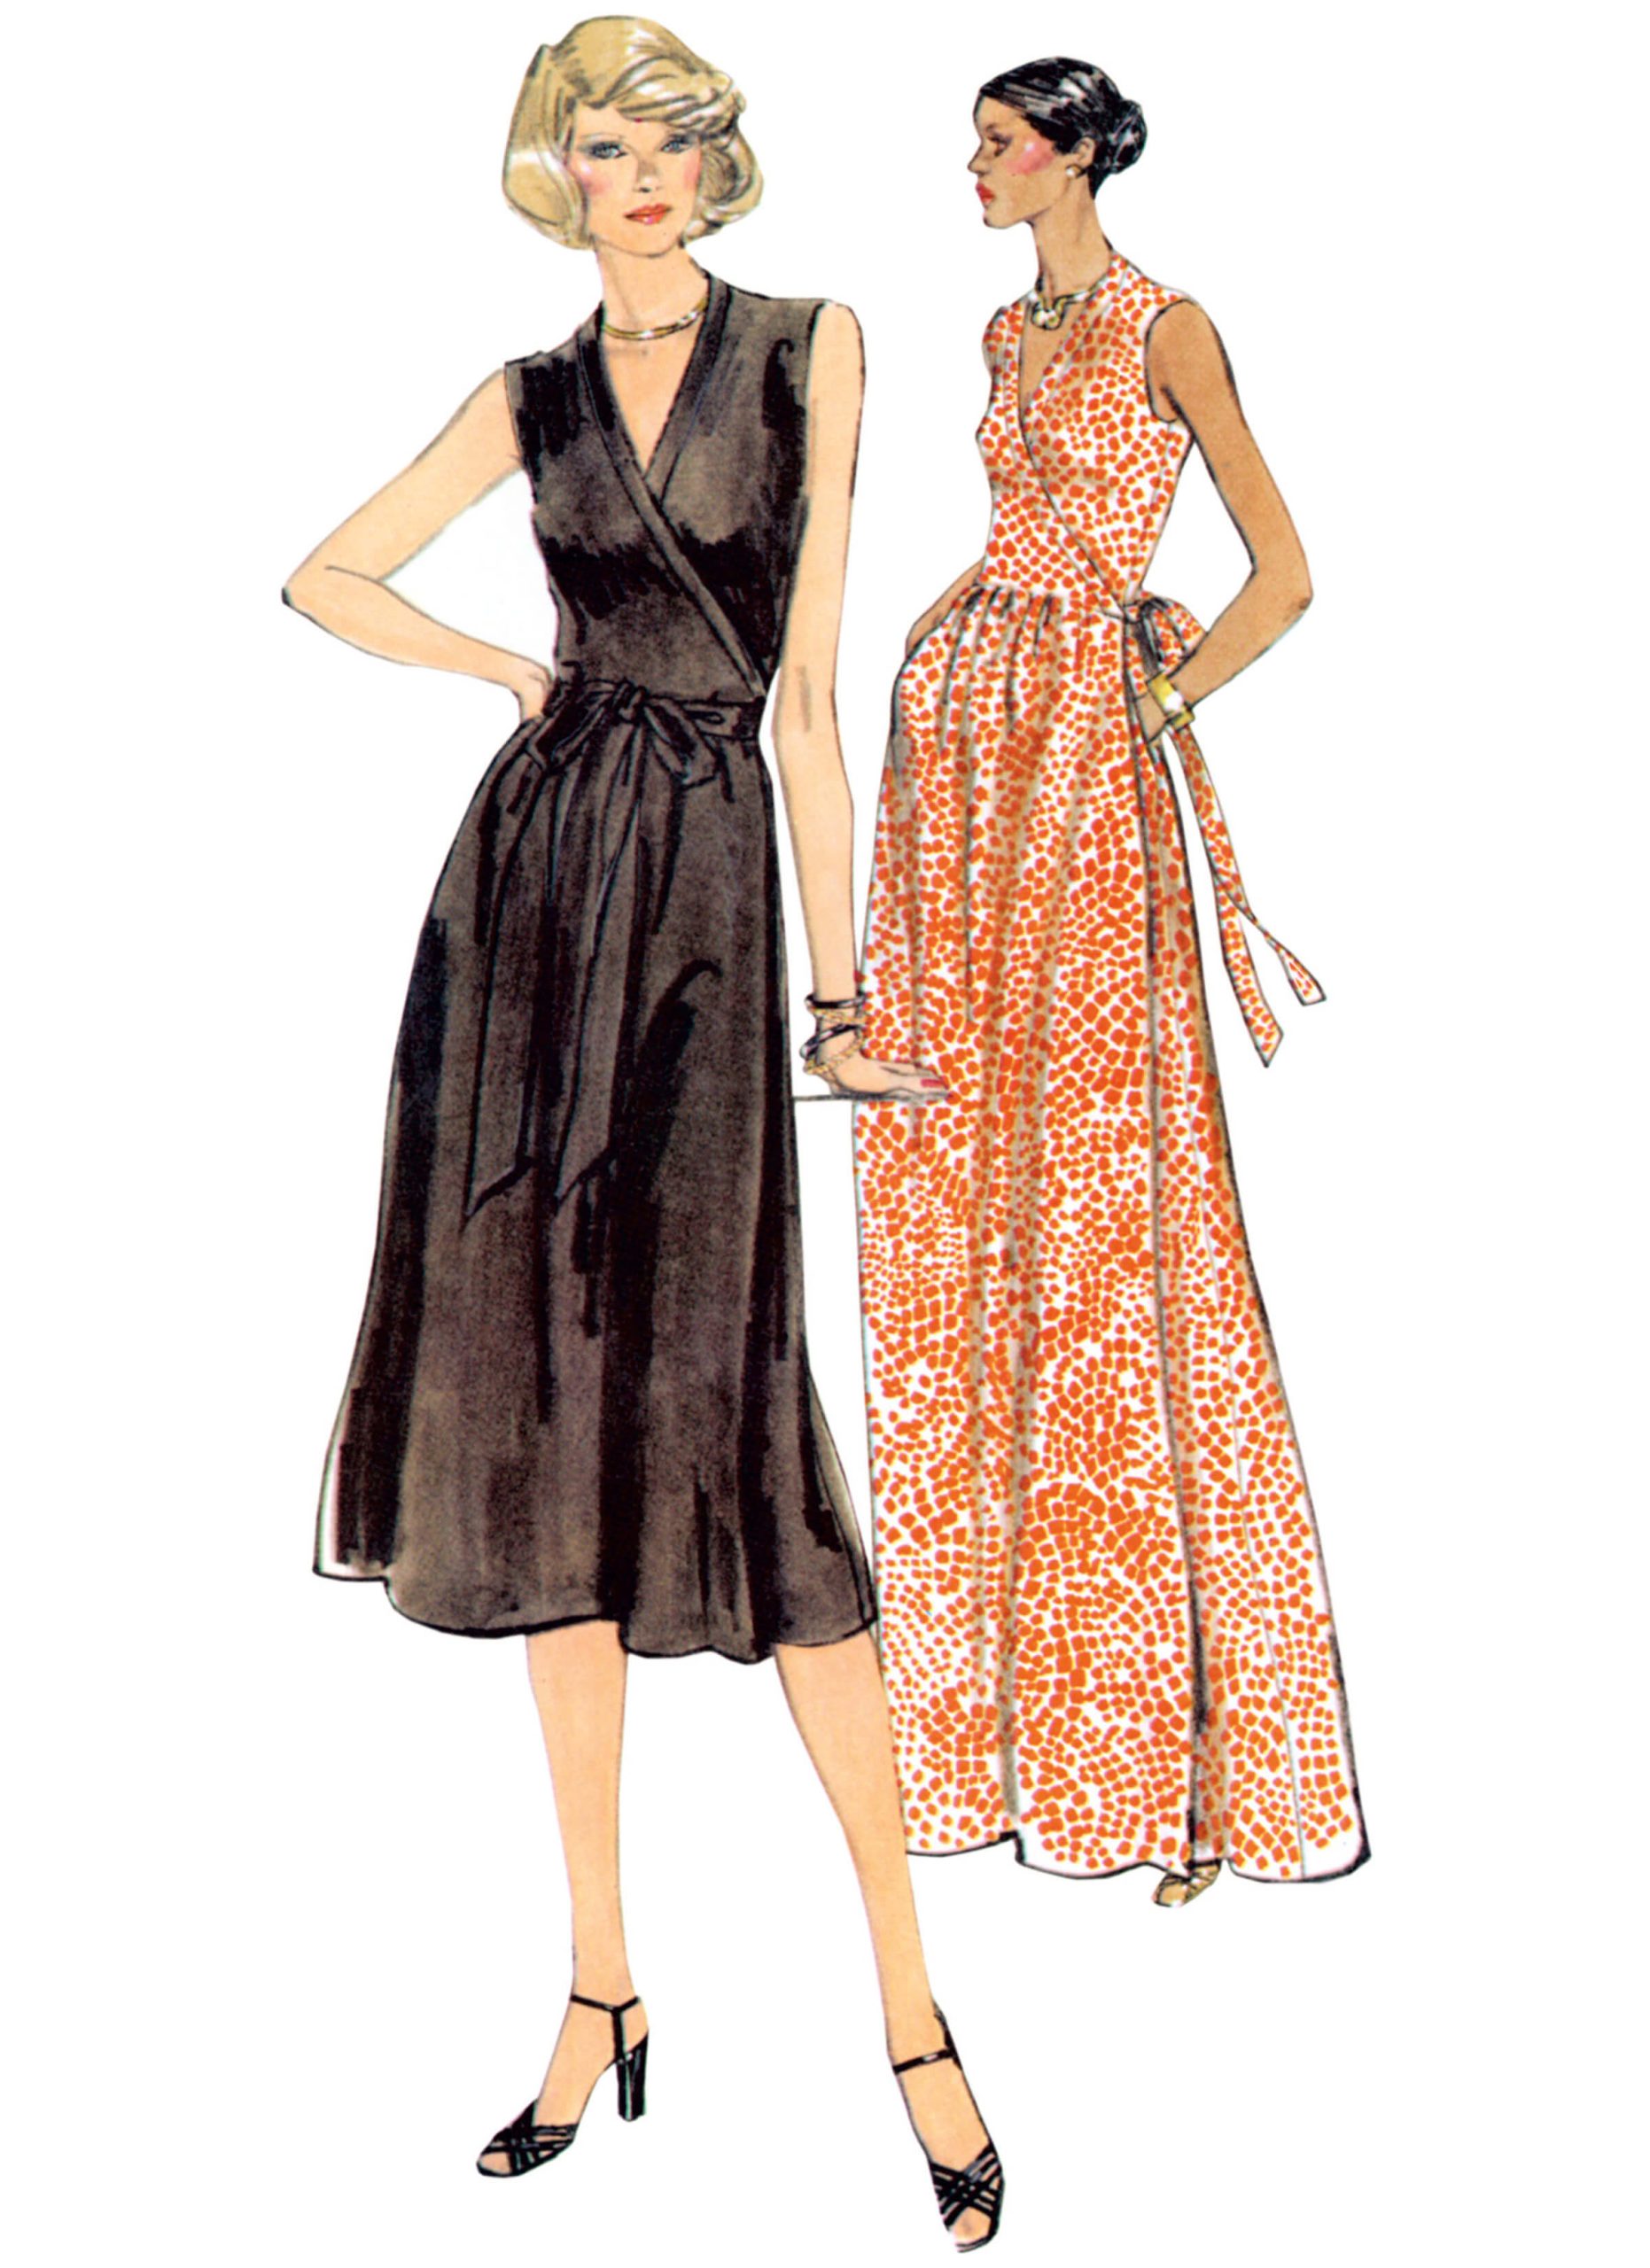 Vogue Patterns V2040 Misses' Front Wrap Dresses by Diane von Furstenberg